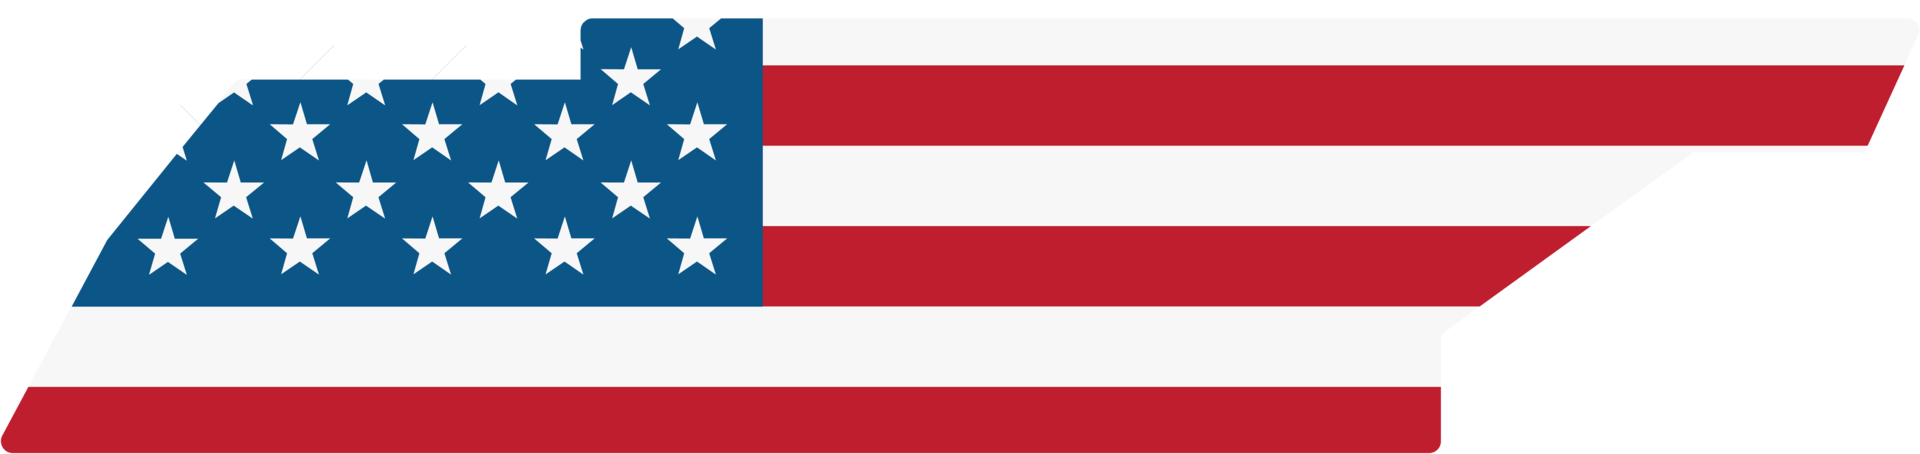 esquema del mapa del estado de tennessee en la bandera de estados unidos. png